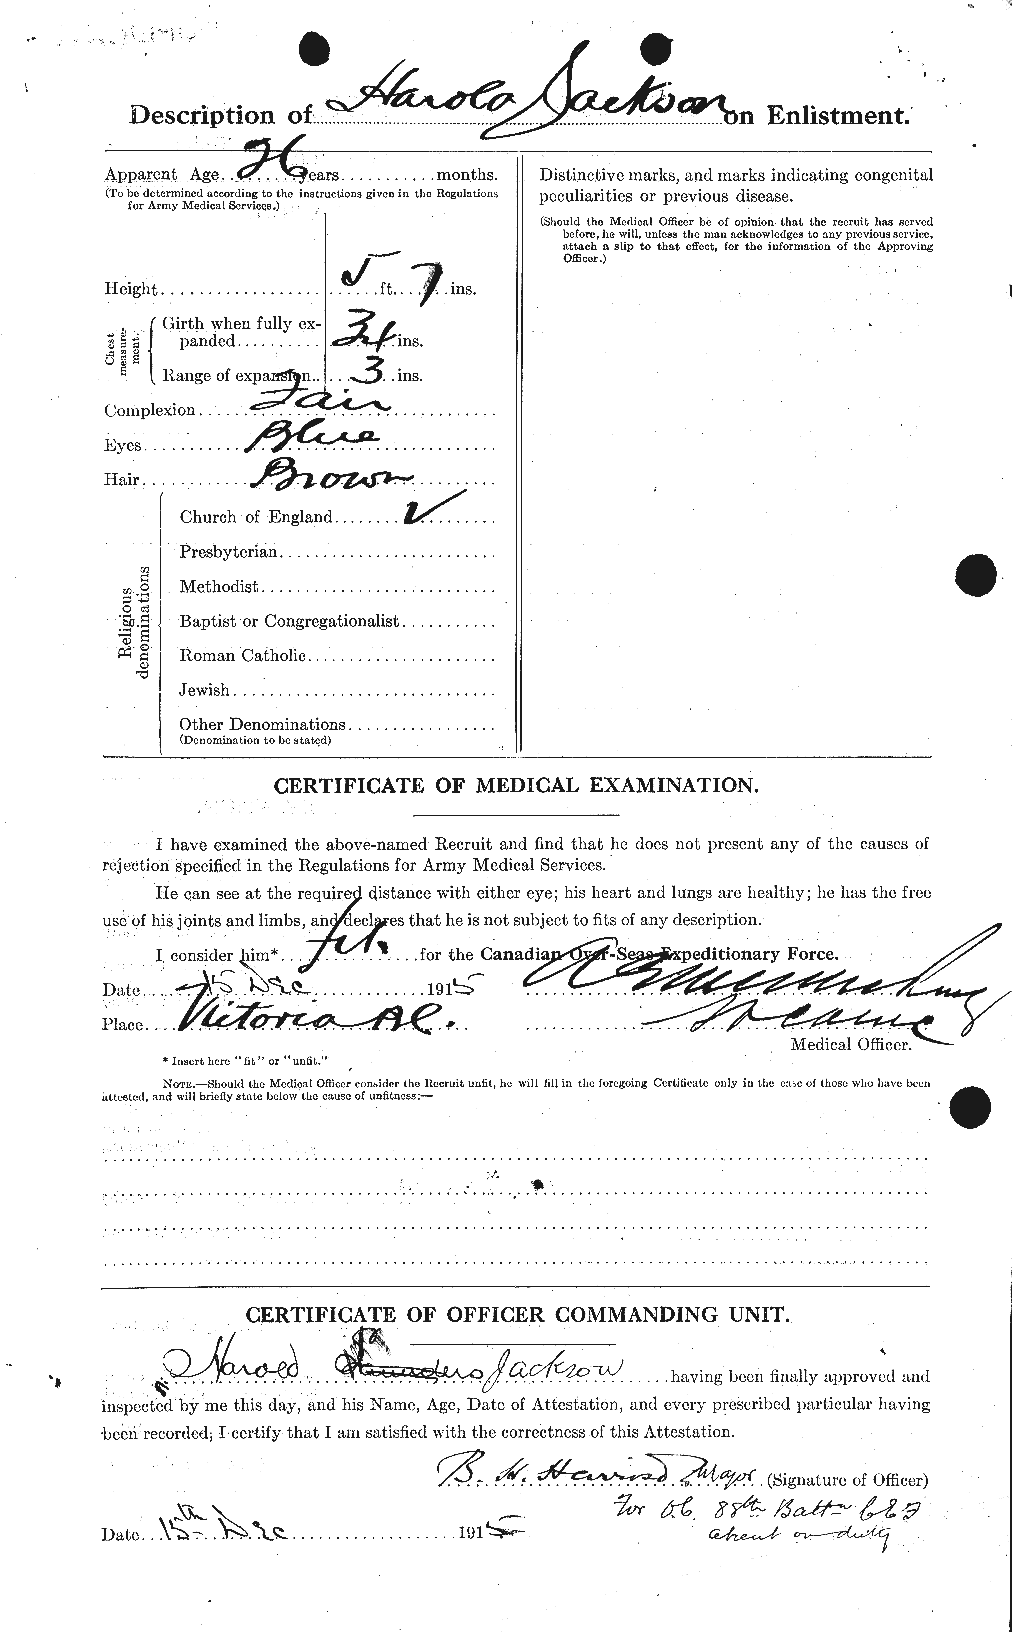 Dossiers du Personnel de la Première Guerre mondiale - CEC 413603b